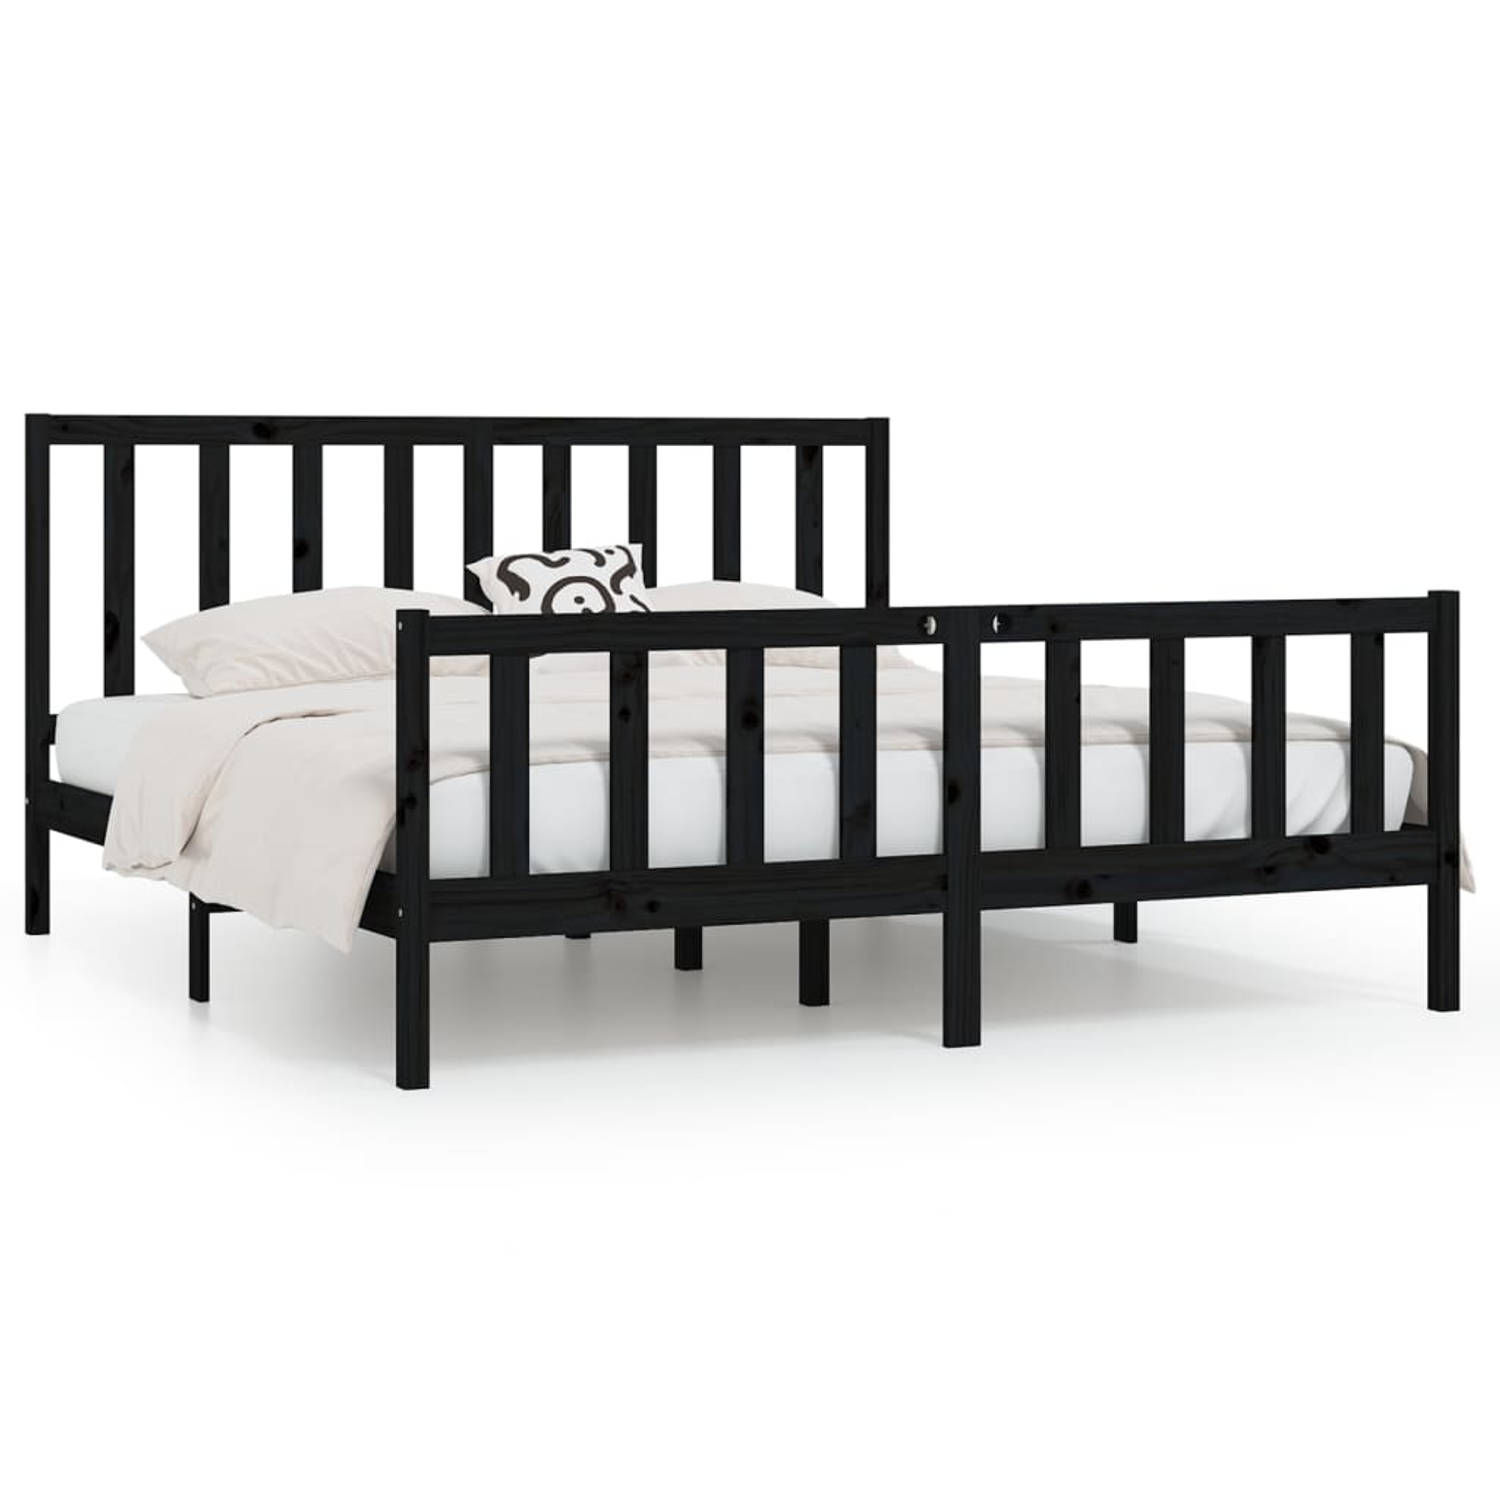 The Living Store Bedframe massief hout zwart 200x200 cm - Bedframe - Bedframes - Tweepersoonsbed - Bed - Bedombouw - Dubbel Bed - Frame - Bed Frame - Ledikant - Bedframe Met Hoofde